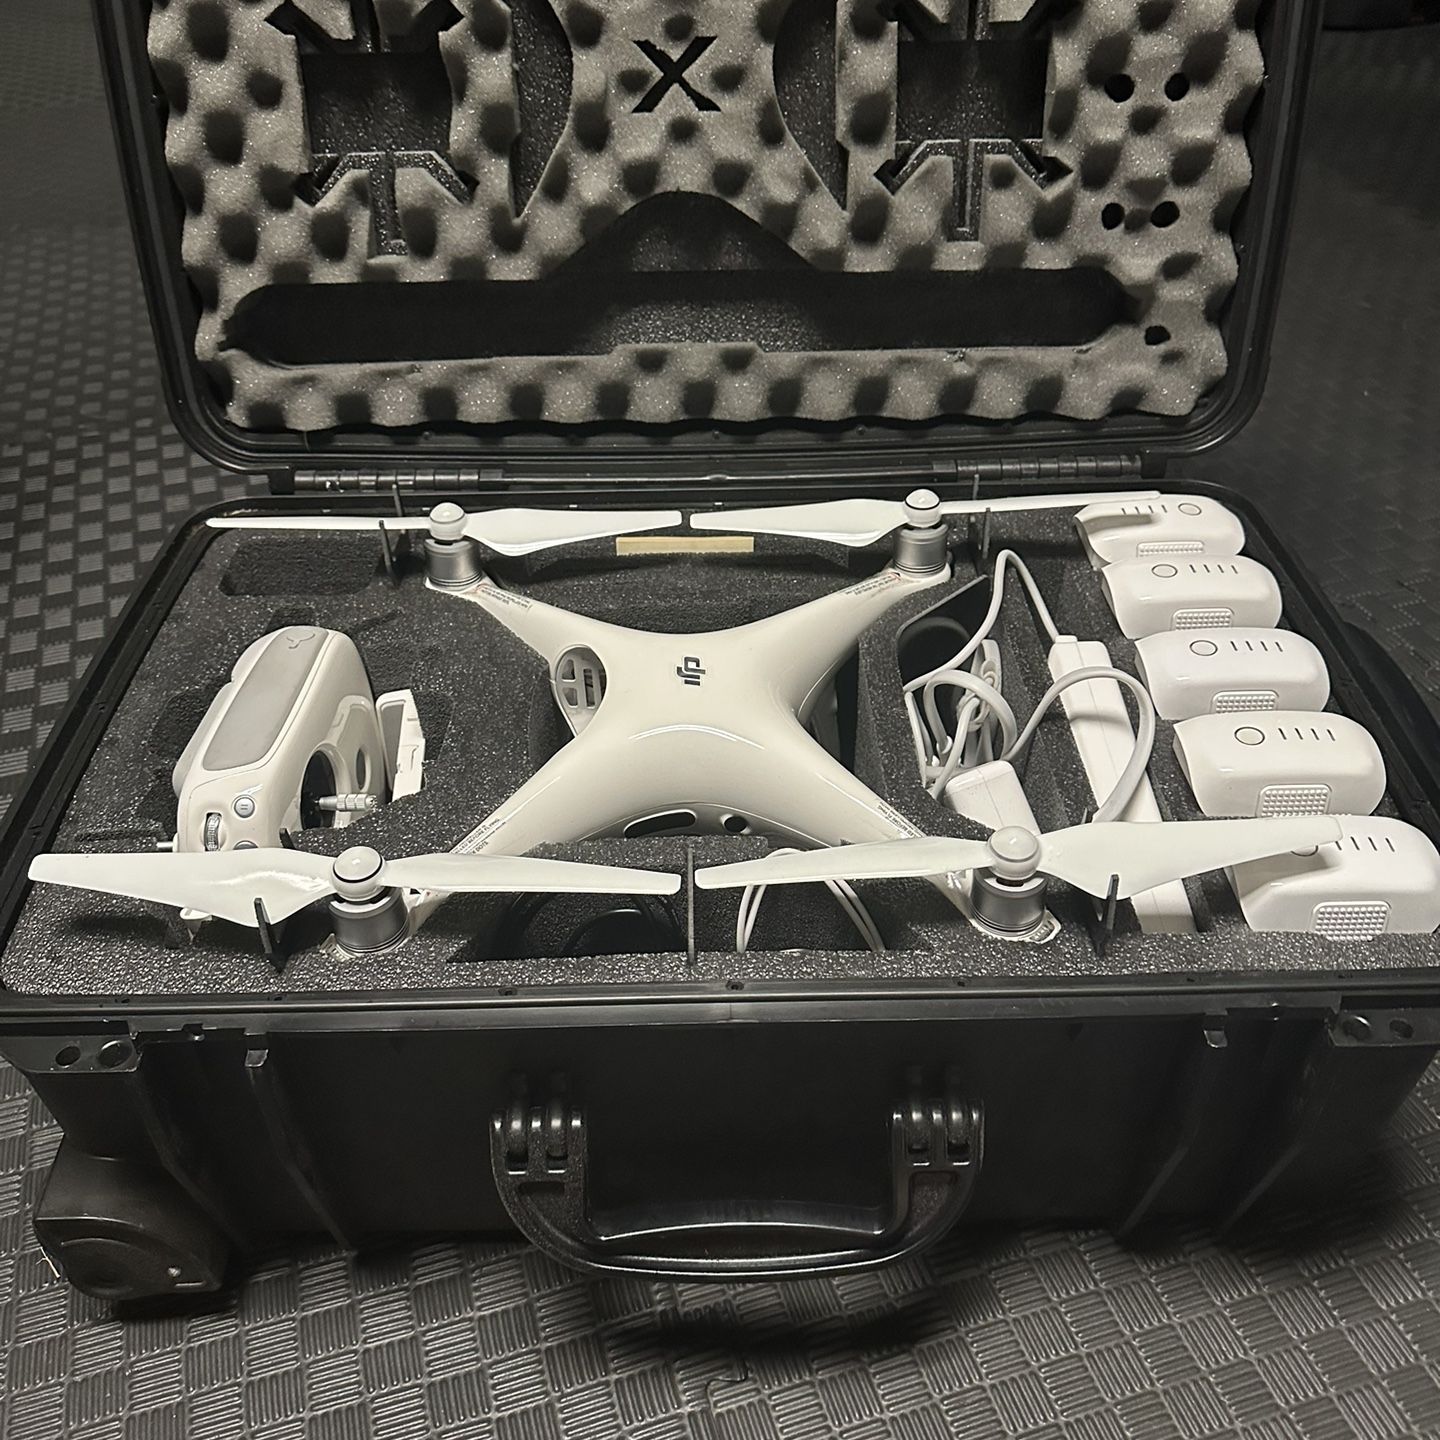 DJI Phantom 4 Pro 4k Drone Bundle